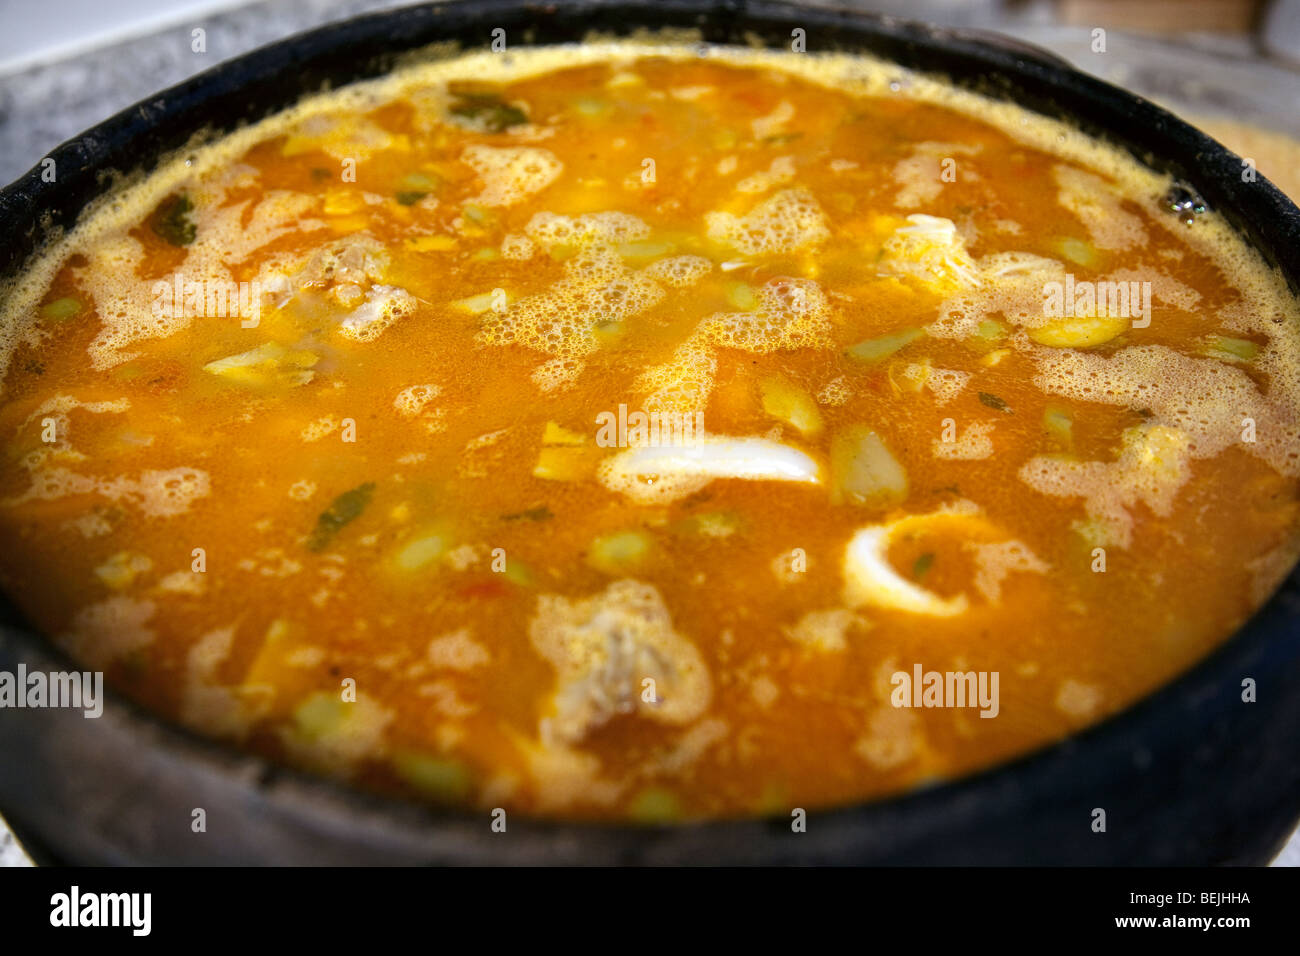 Fish soup caldo de peixe Stock Photo